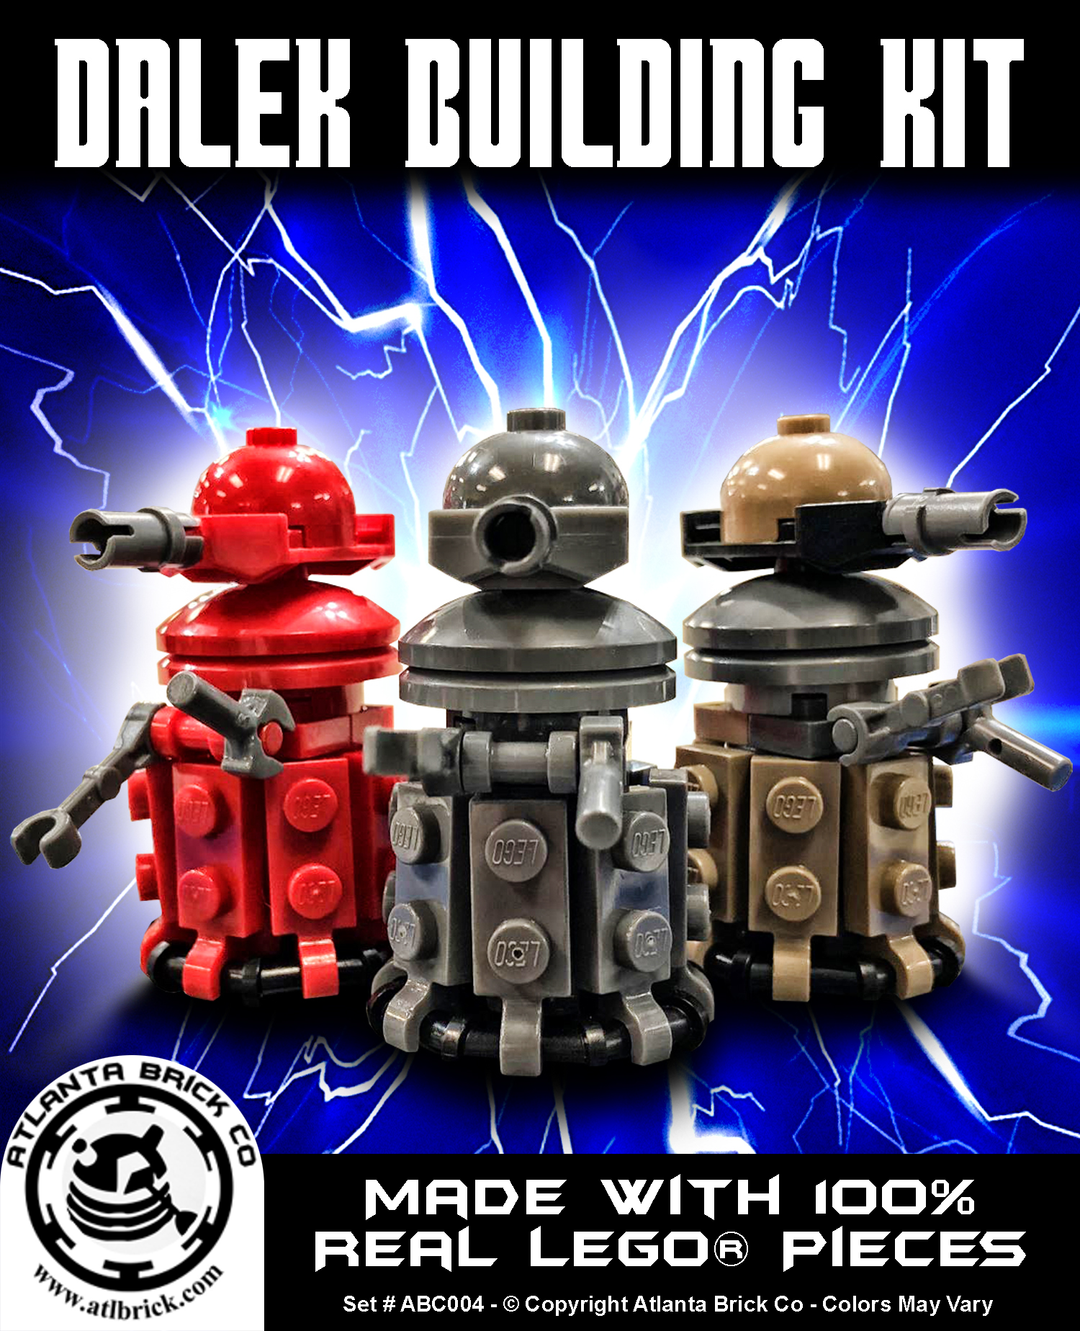 Dalek Building Kit